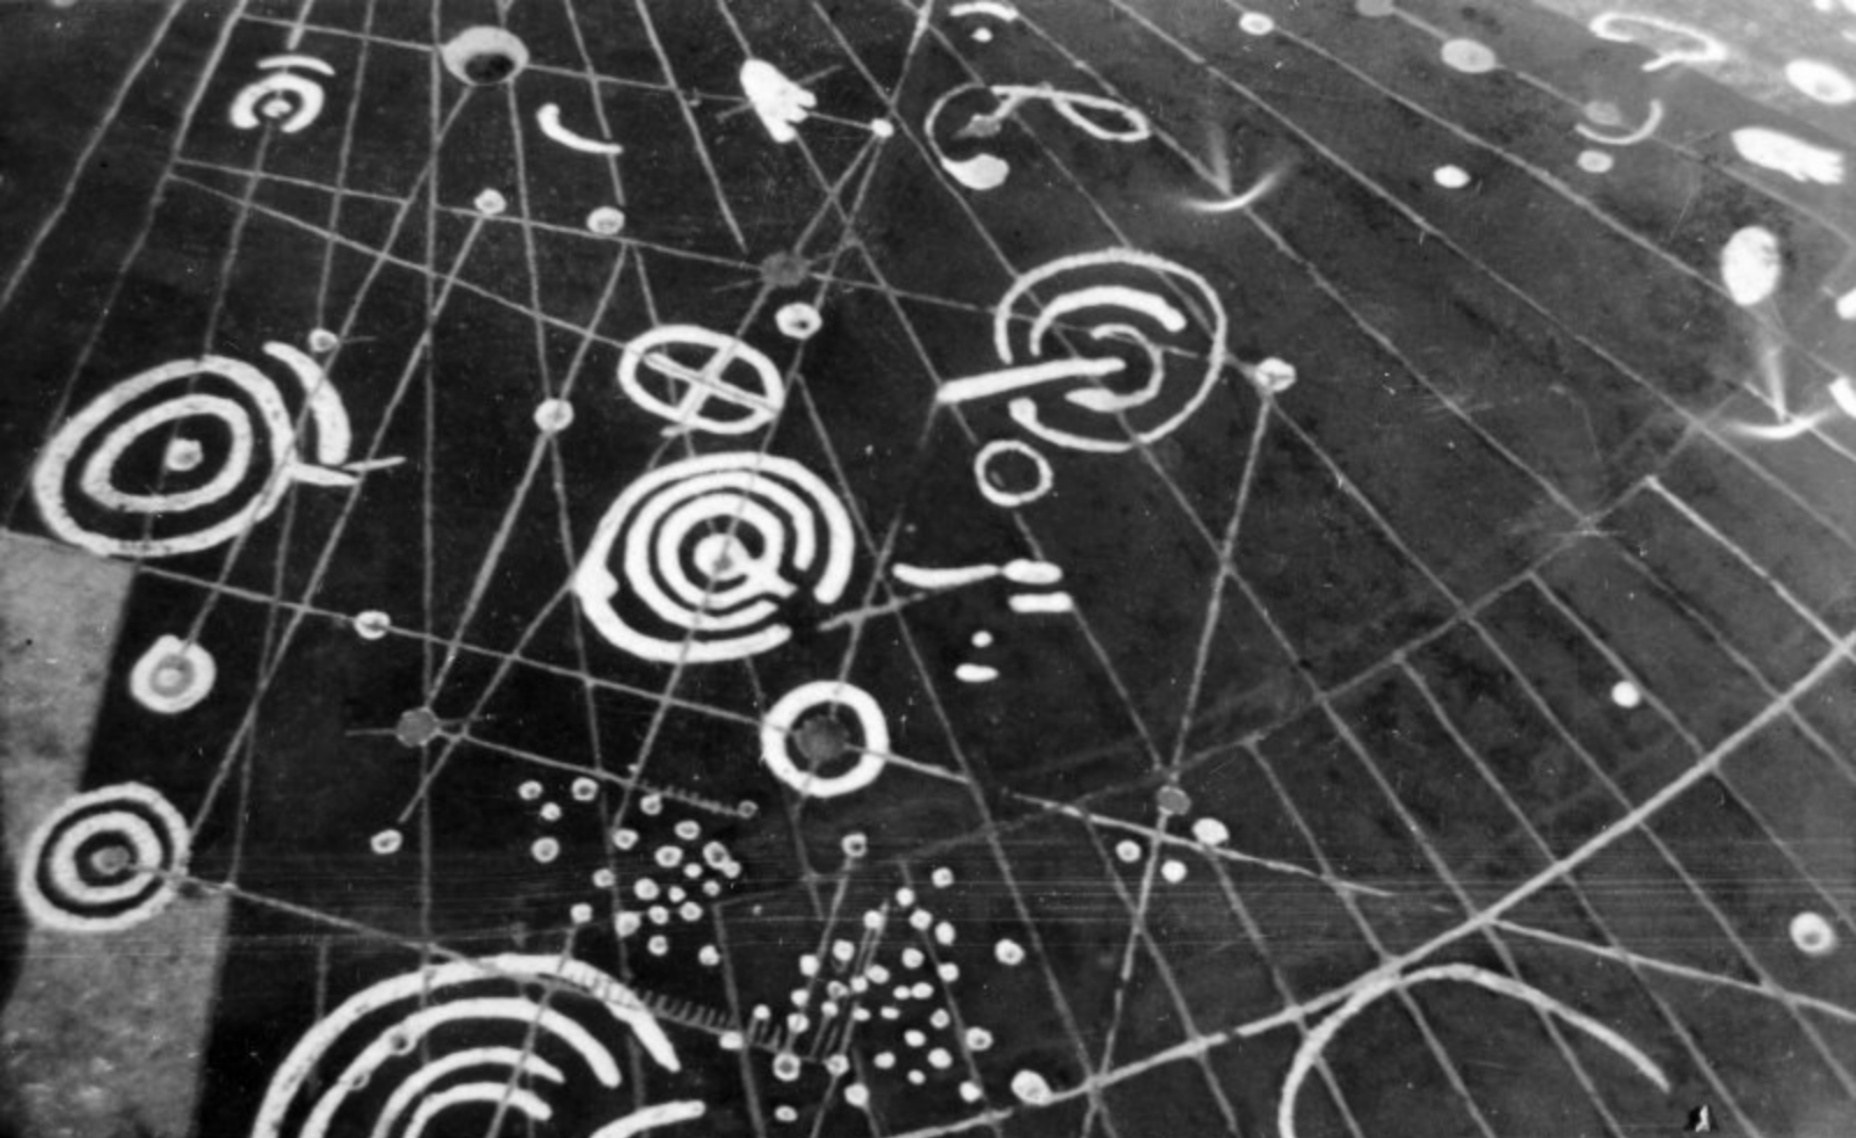 Камень Кохно: может ли эта 5000-летняя звездная карта быть свидетельством утраченной развитой цивилизации?